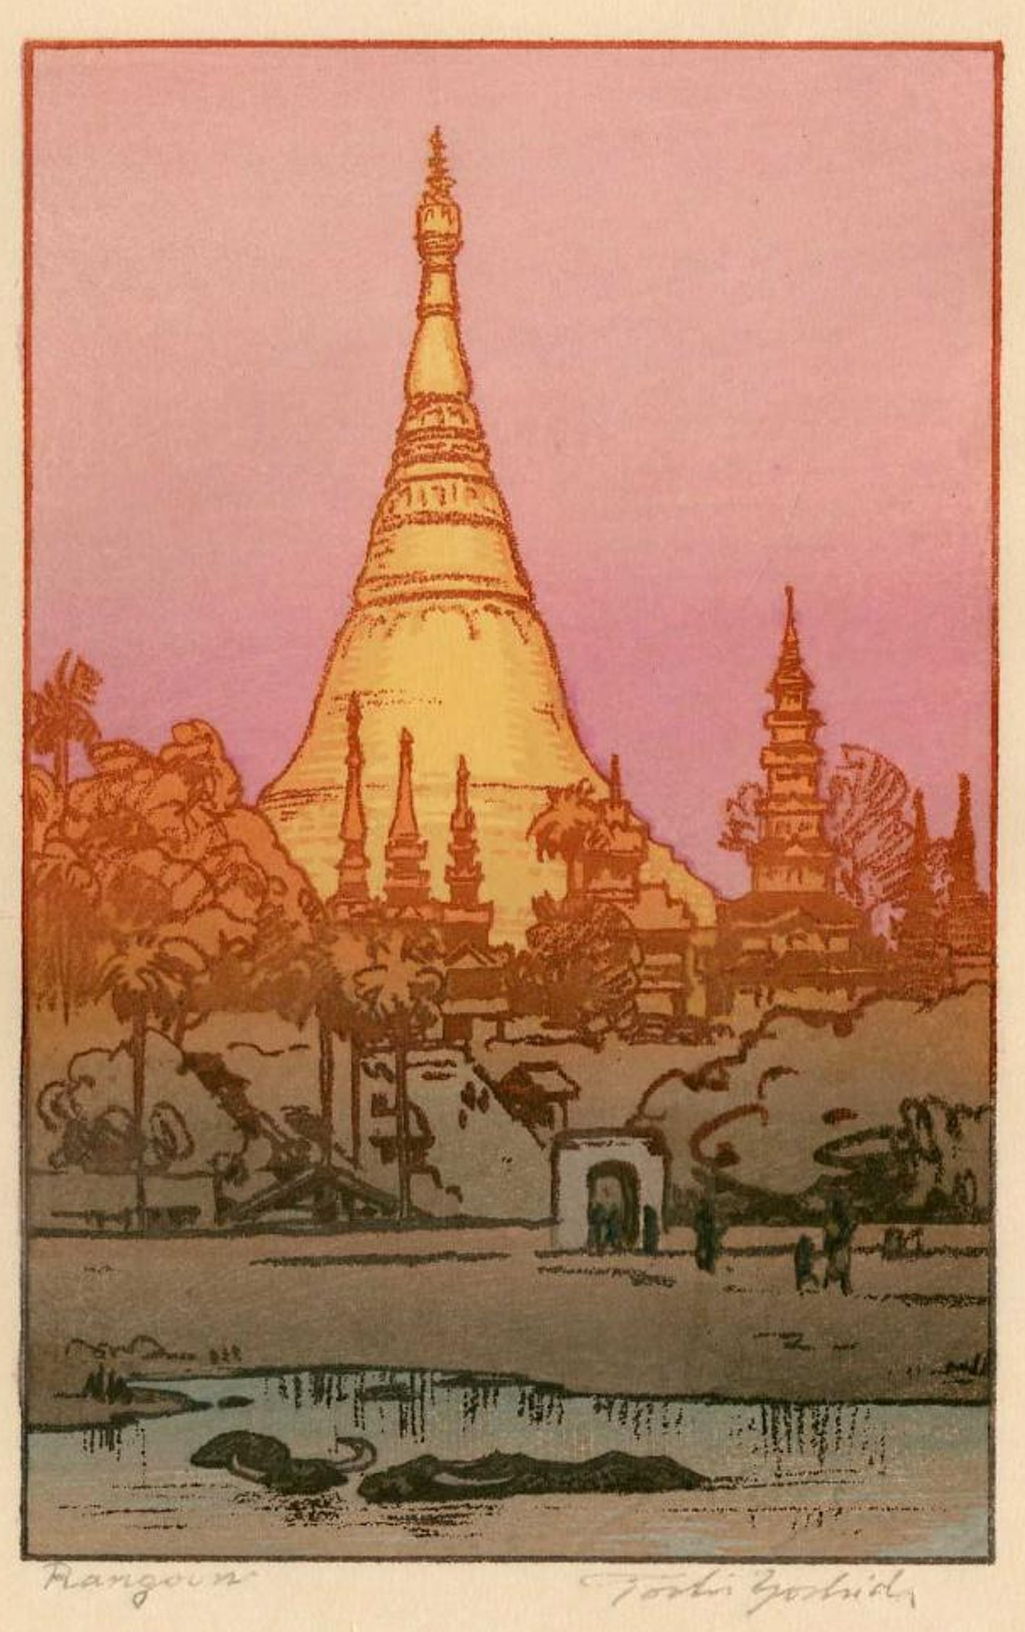 Toshi Yoshida “Rangoon” 1984 woodblock print